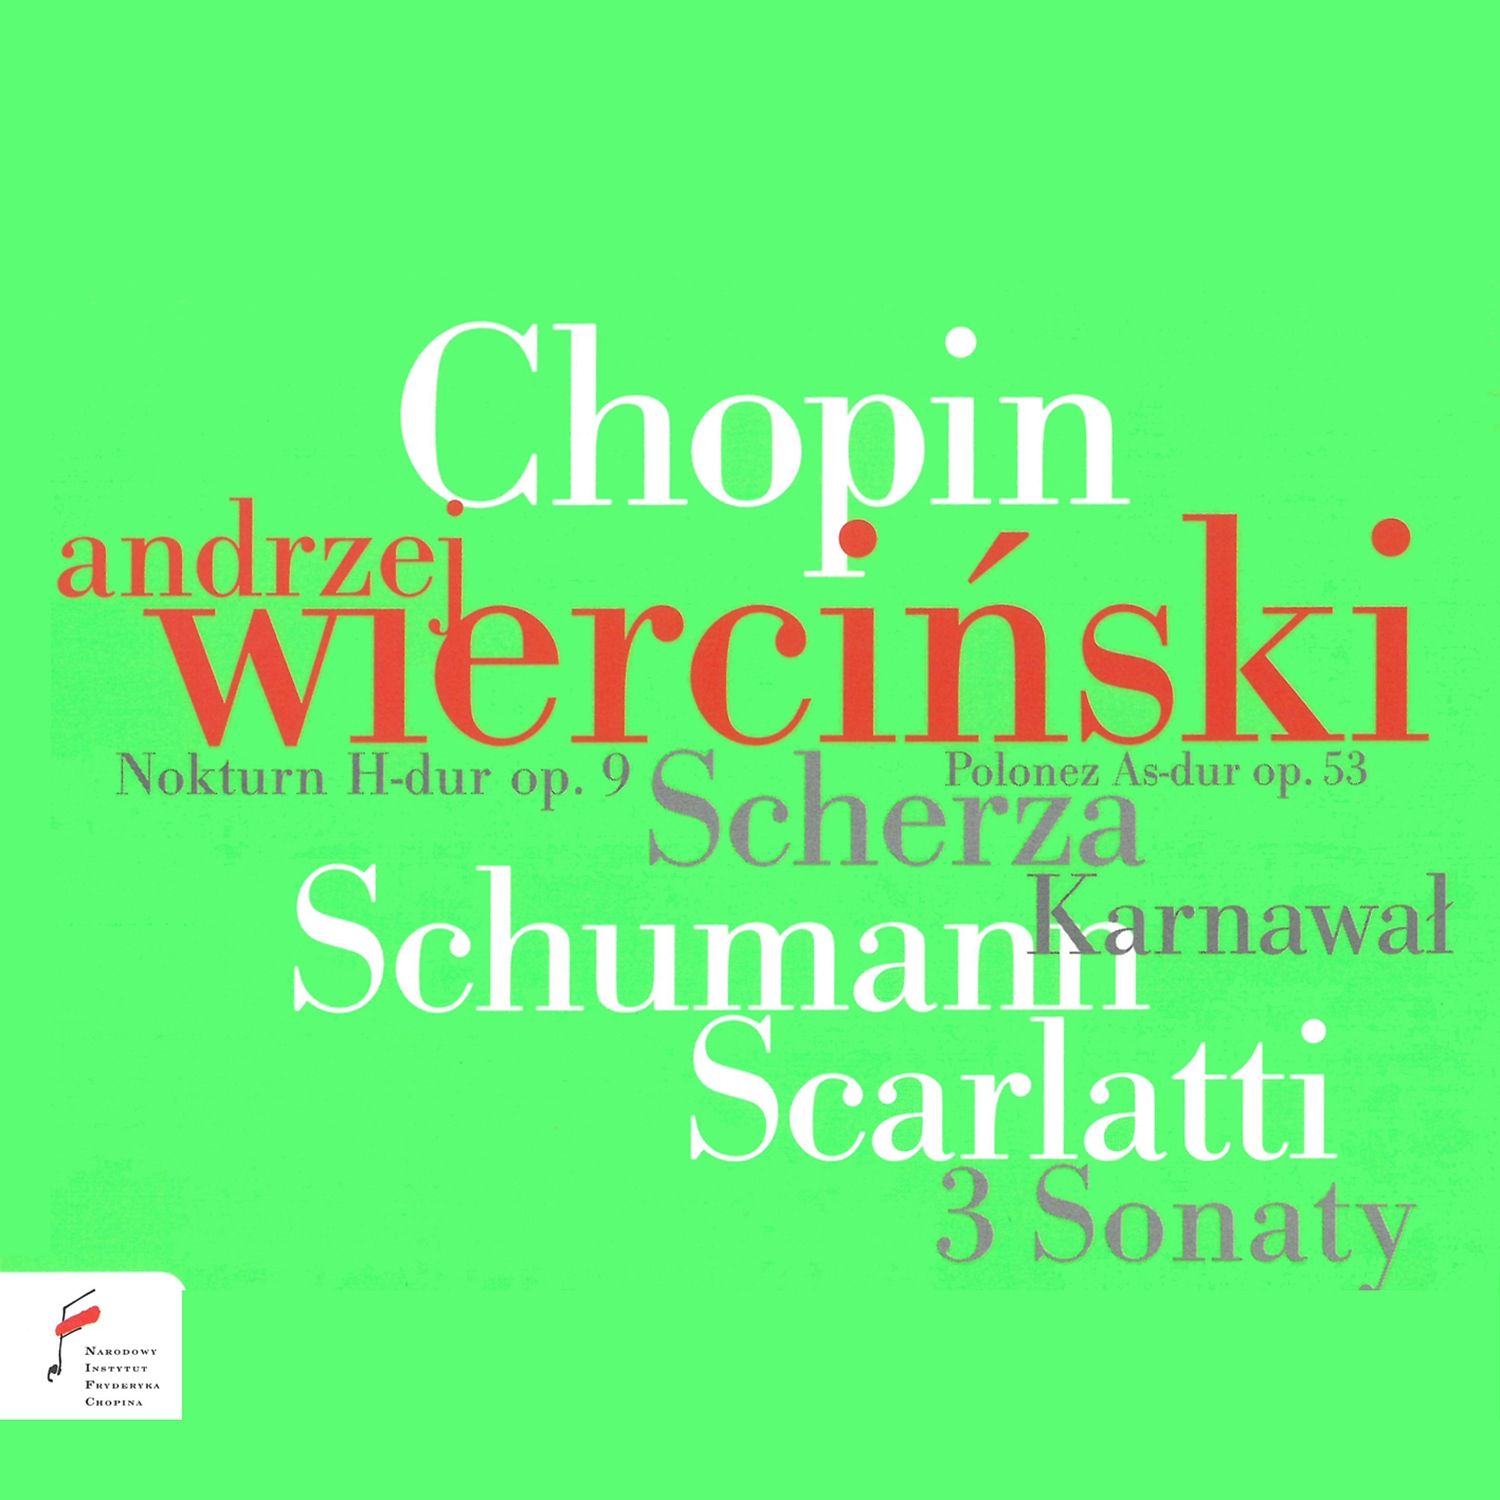 Andrzej Wierciński plays Chopin, Schumann & Scarlatti